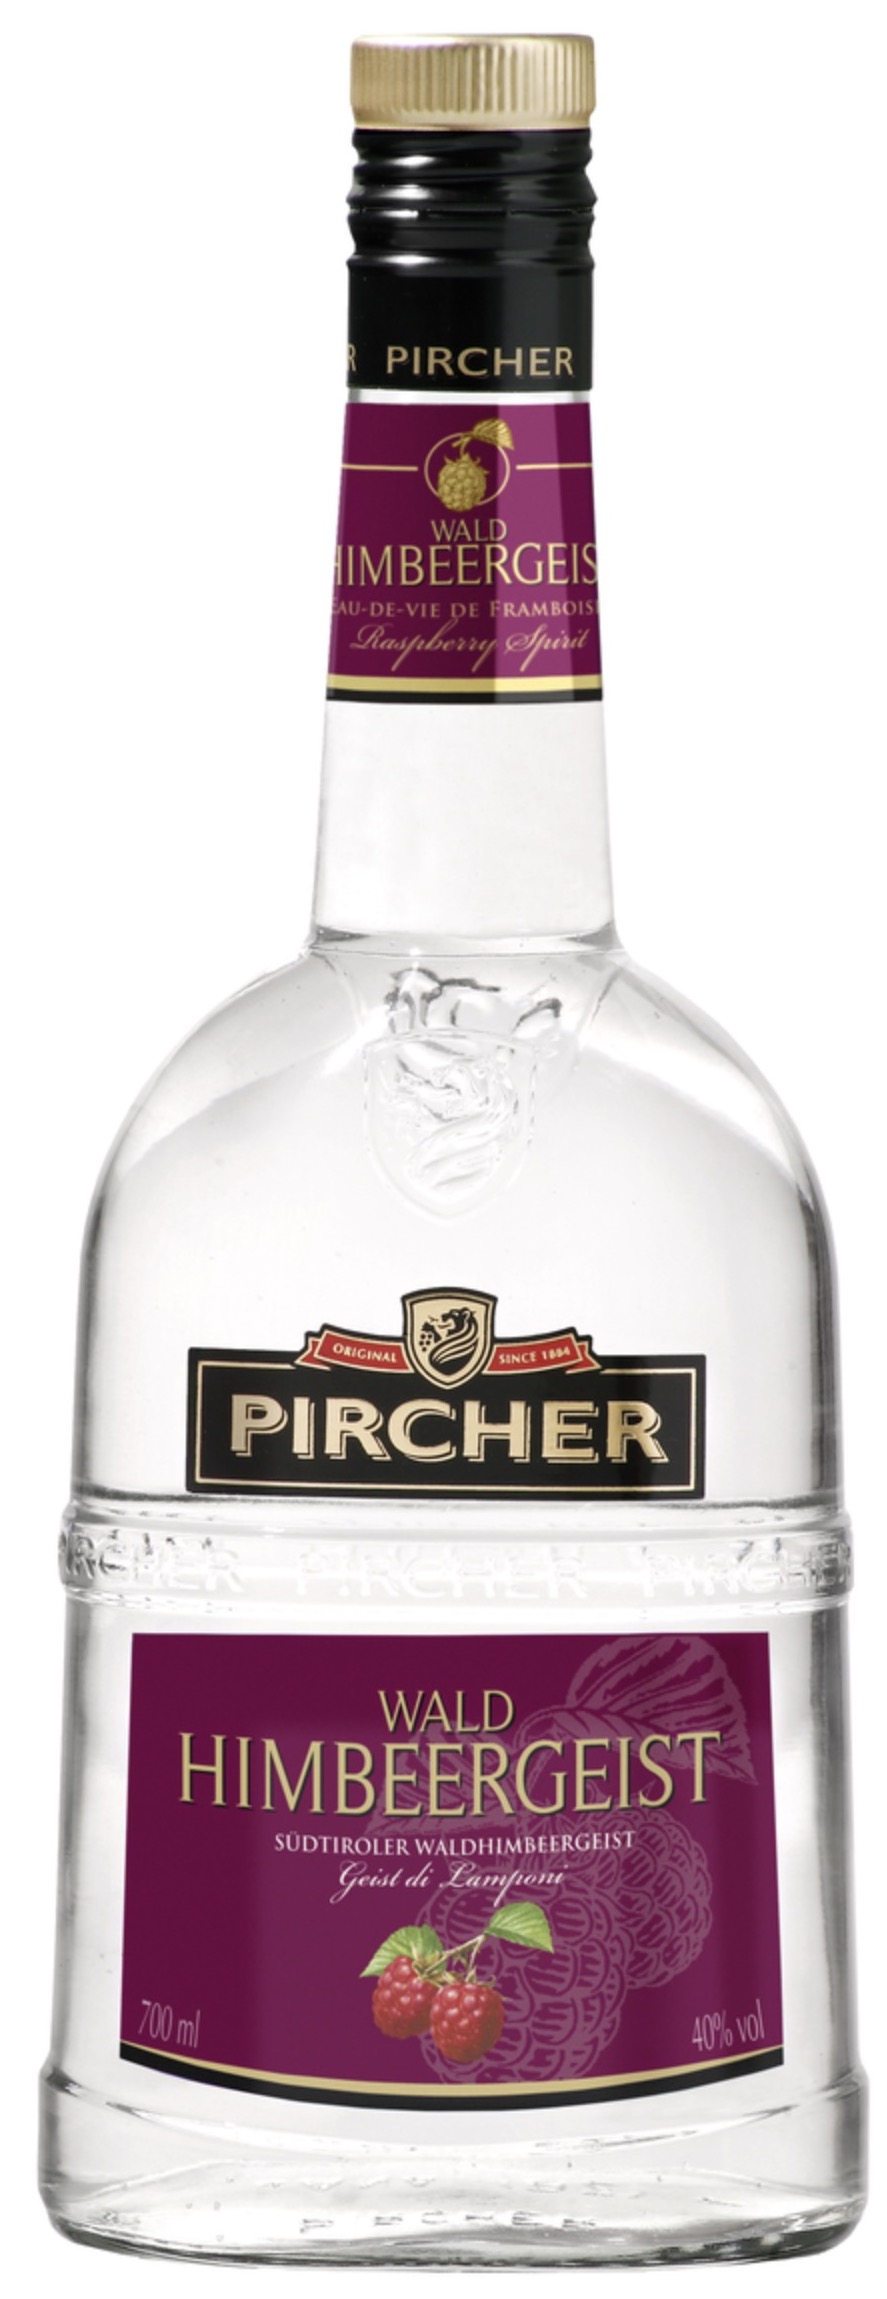 Pircher Waldhimbeergeist 40% vol. 0,7L